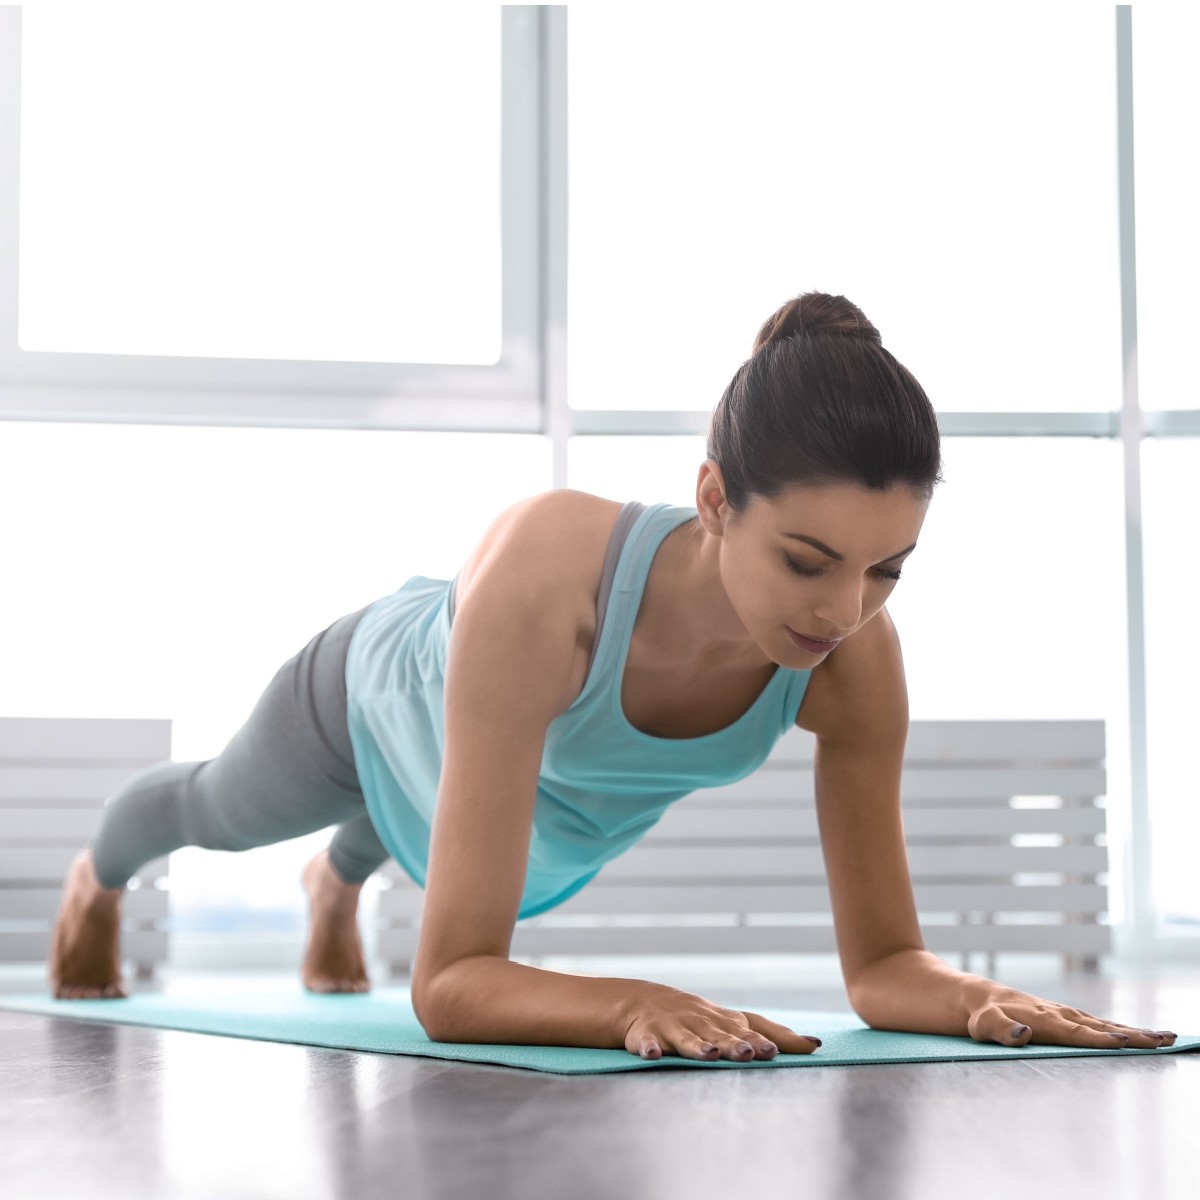 Chia sẻ 3 động tác yoga cơ bản cực dễ nhưng giúp nắn chỉnh dáng đẹp, cơ thể dẻo dai